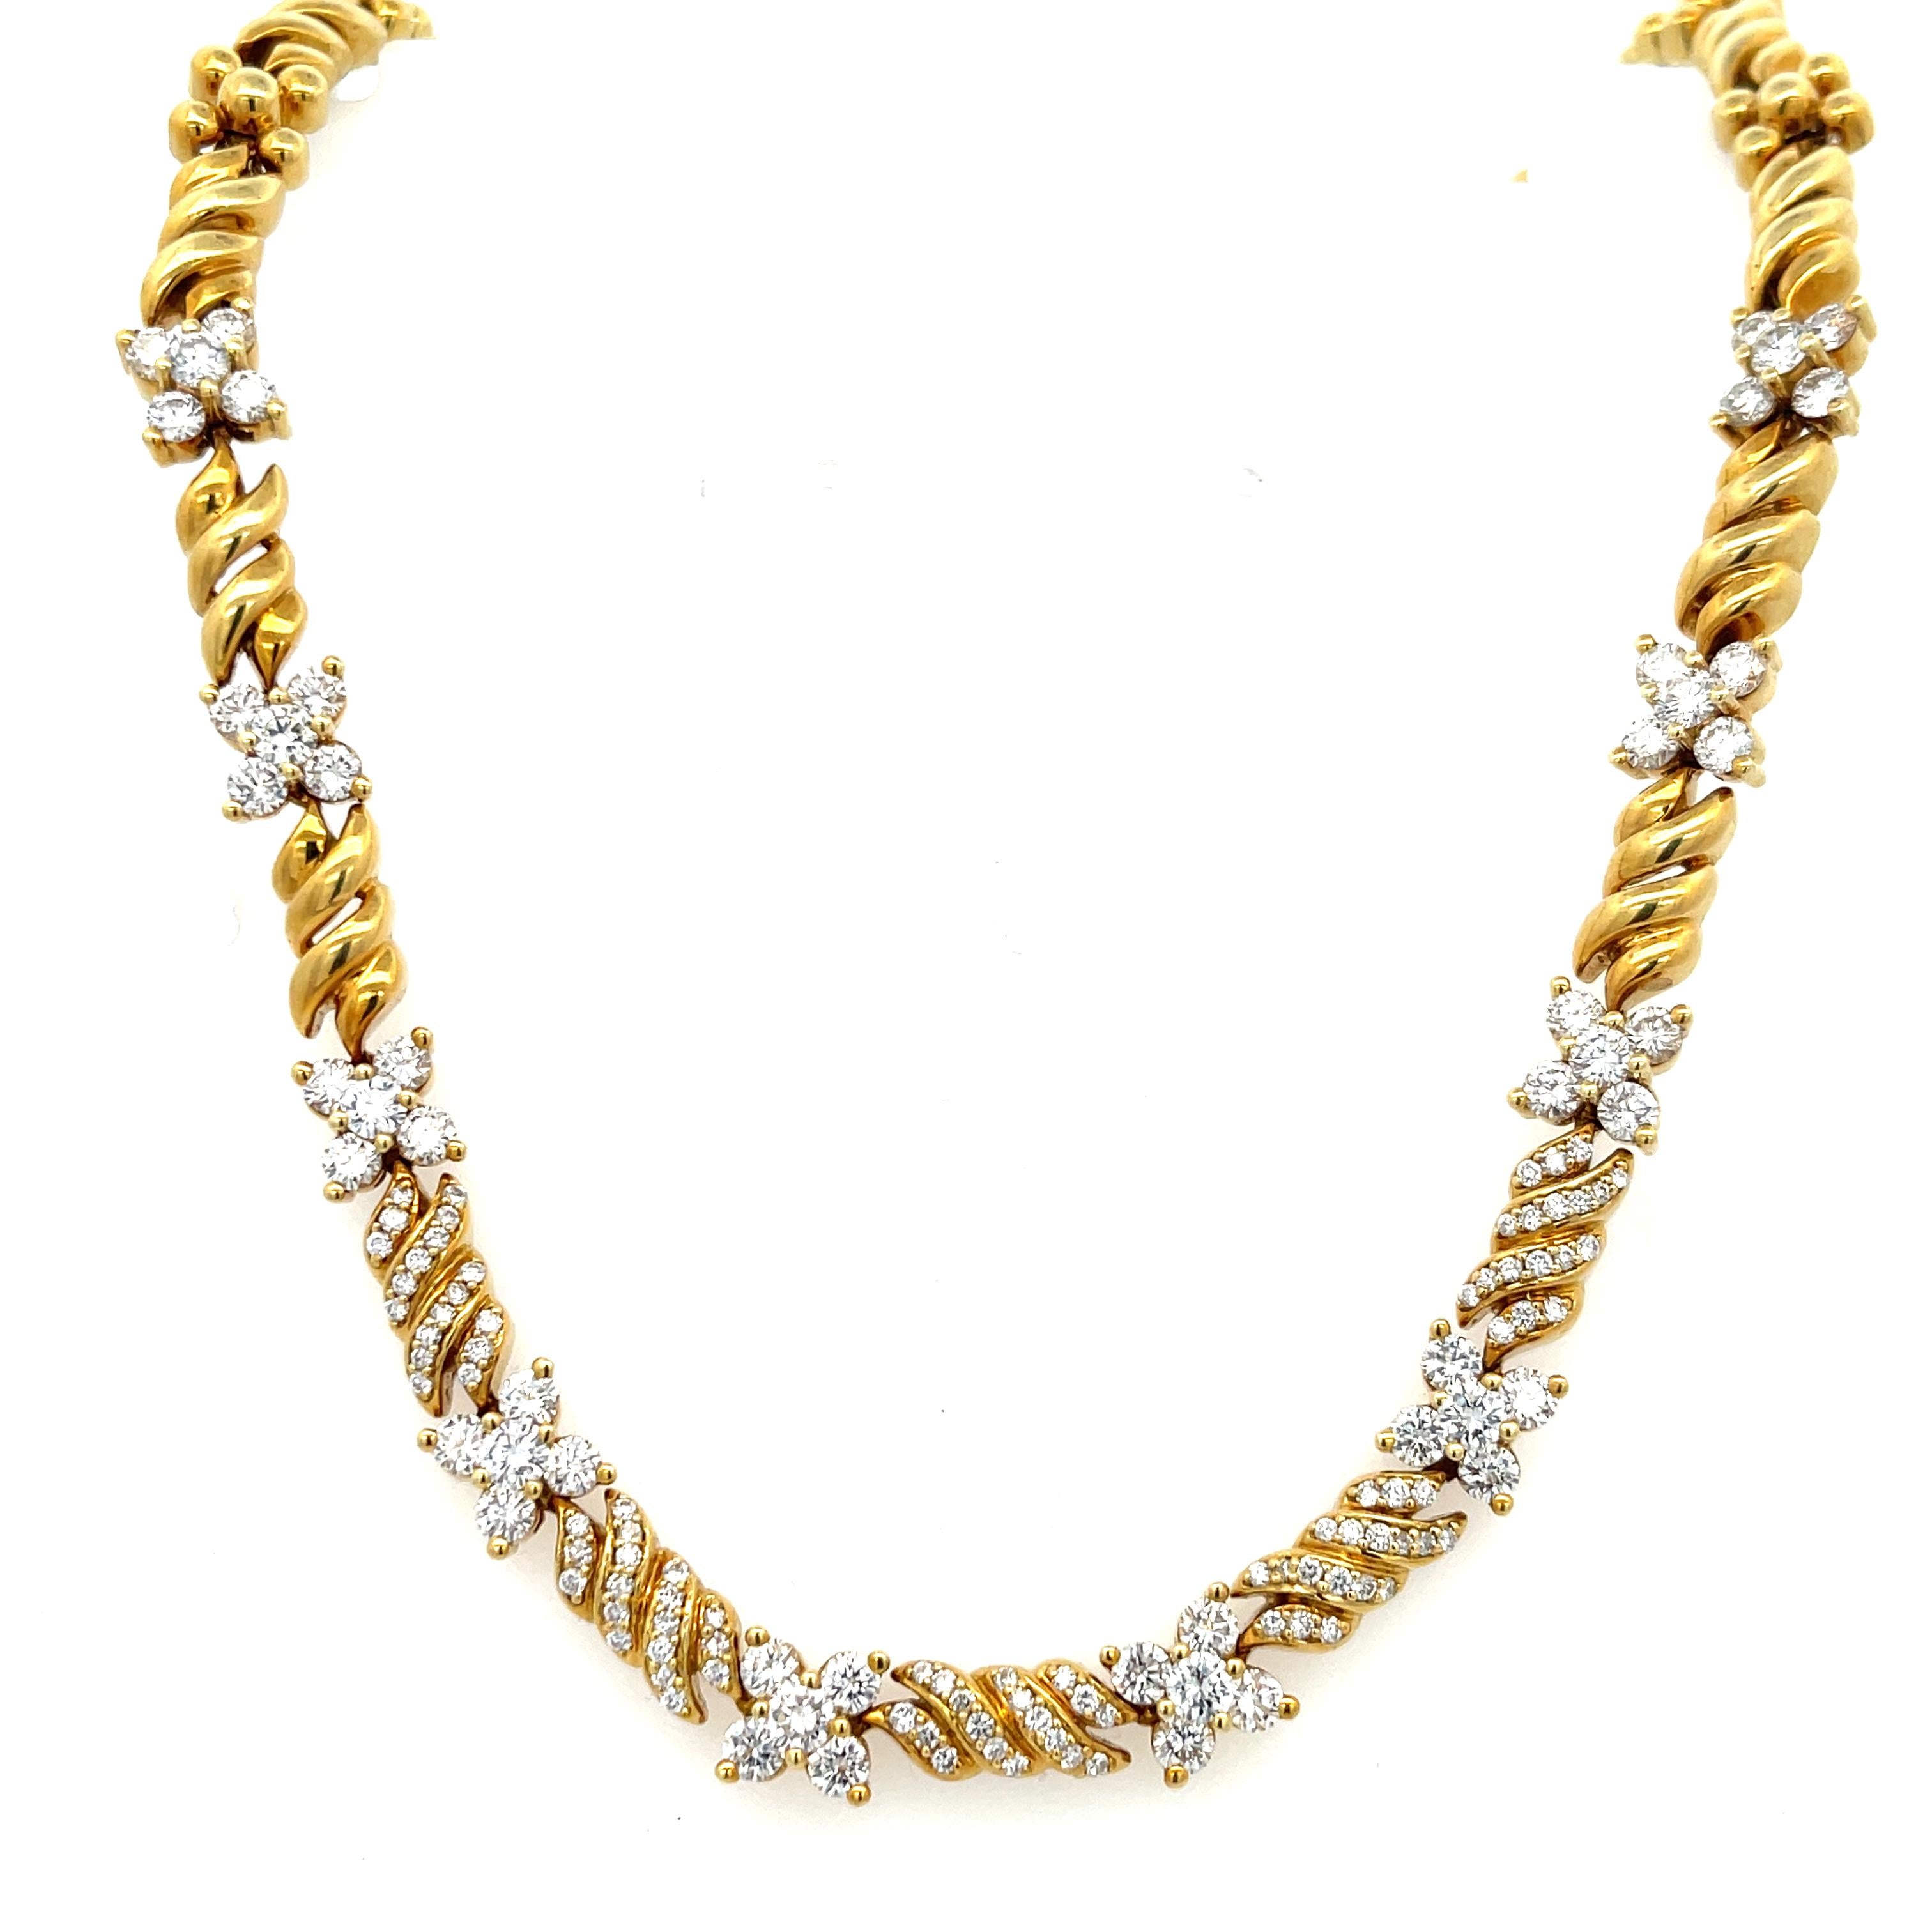 Jose HESS Floret Diamant-Halskette in 18K Gelbgold. Die Halskette besteht aus 6,50 ct runden Brillanten der Farbe F und der Reinheit VS. Die Halskette ist 16 Zoll lang, 3/8 Zoll breit und wiegt 70,5 Gramm. Mit verdecktem Verschluss und 8-facher